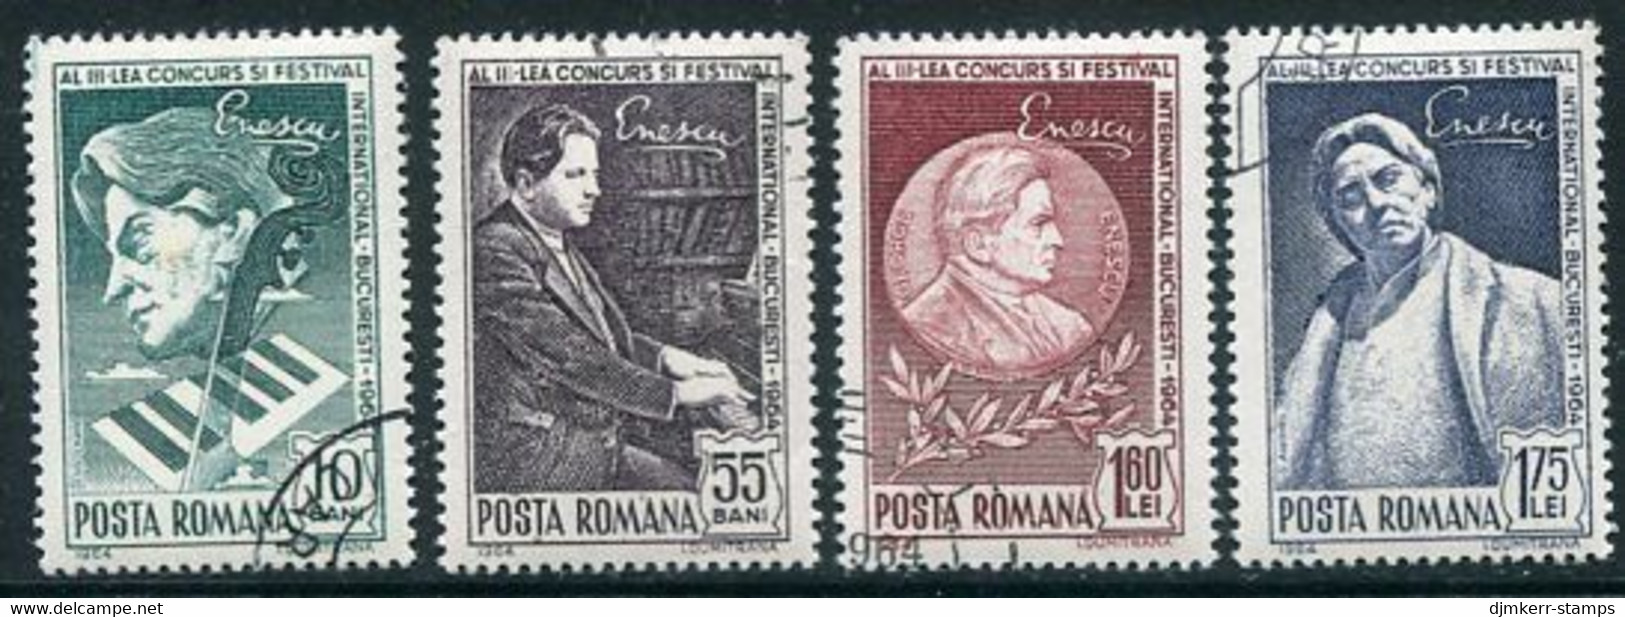 ROMANIA 1964 Enescu Music Competition Used.  Michel 2326-29 - Usati